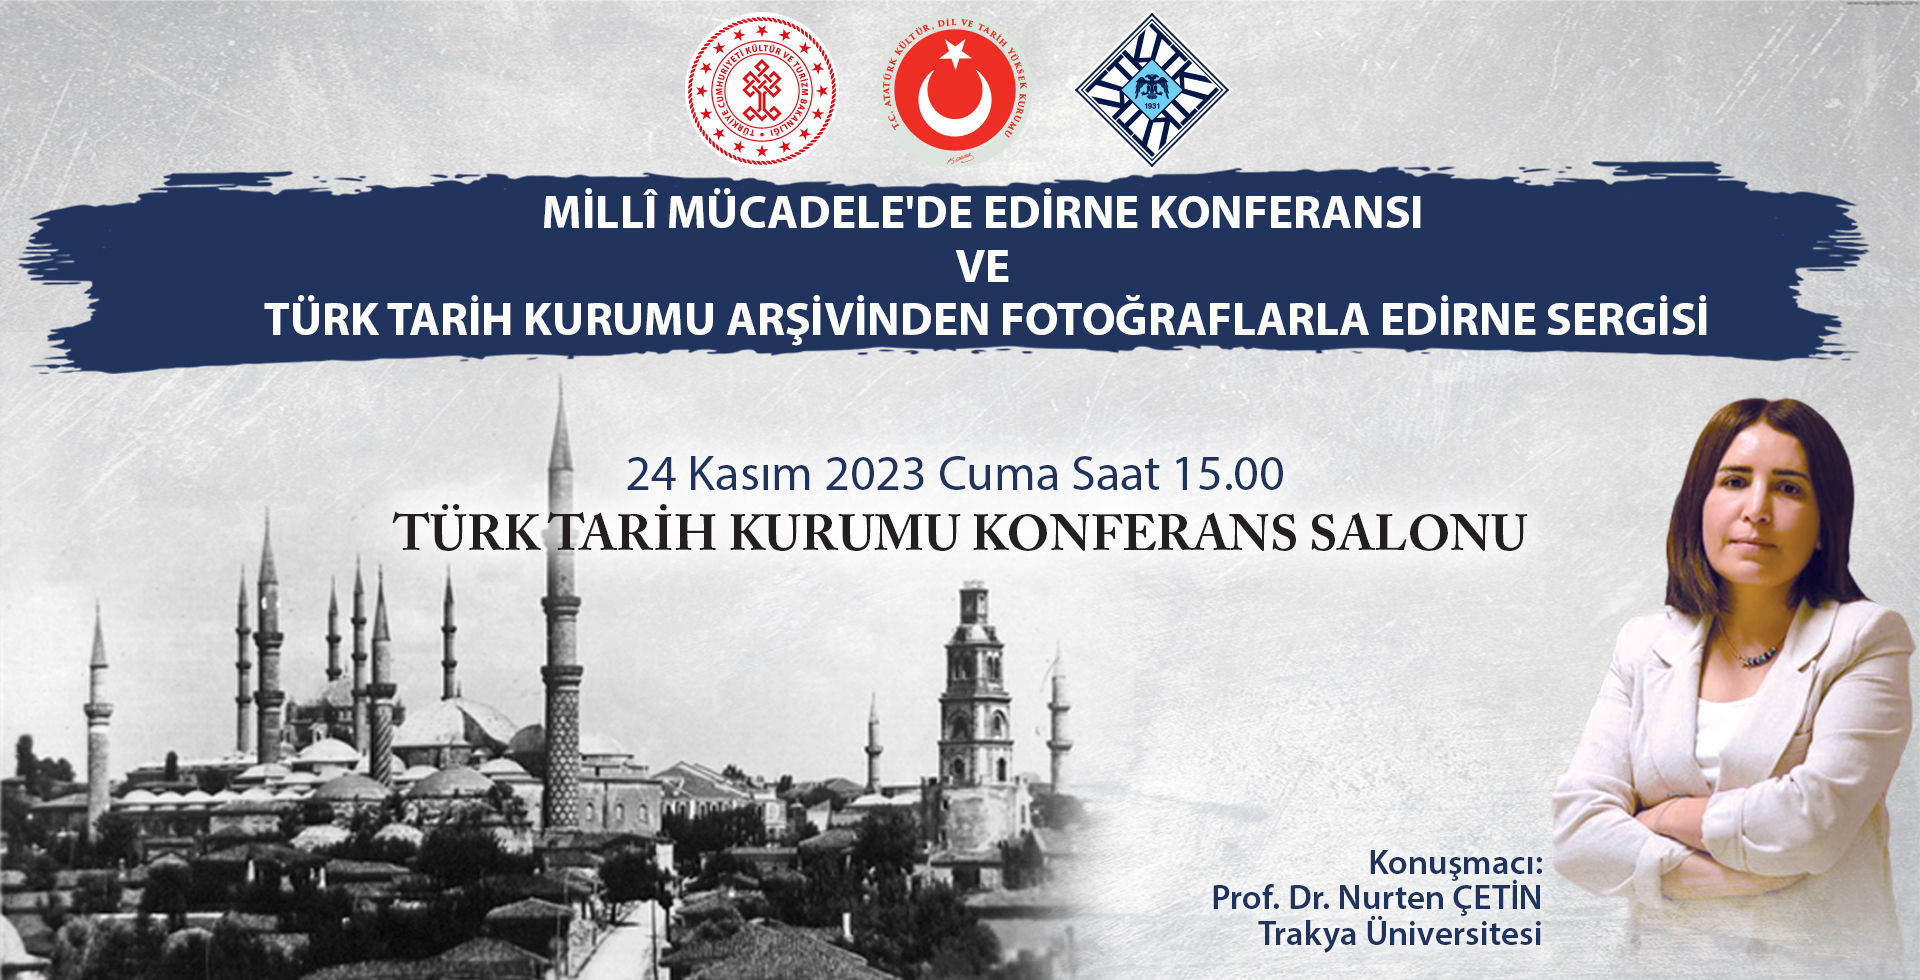 Millî Mücadele’de Edirne Konferansı ve Türk Tarih Kurumu Arşivinden Fotoğraflarla Edirne Sergisi